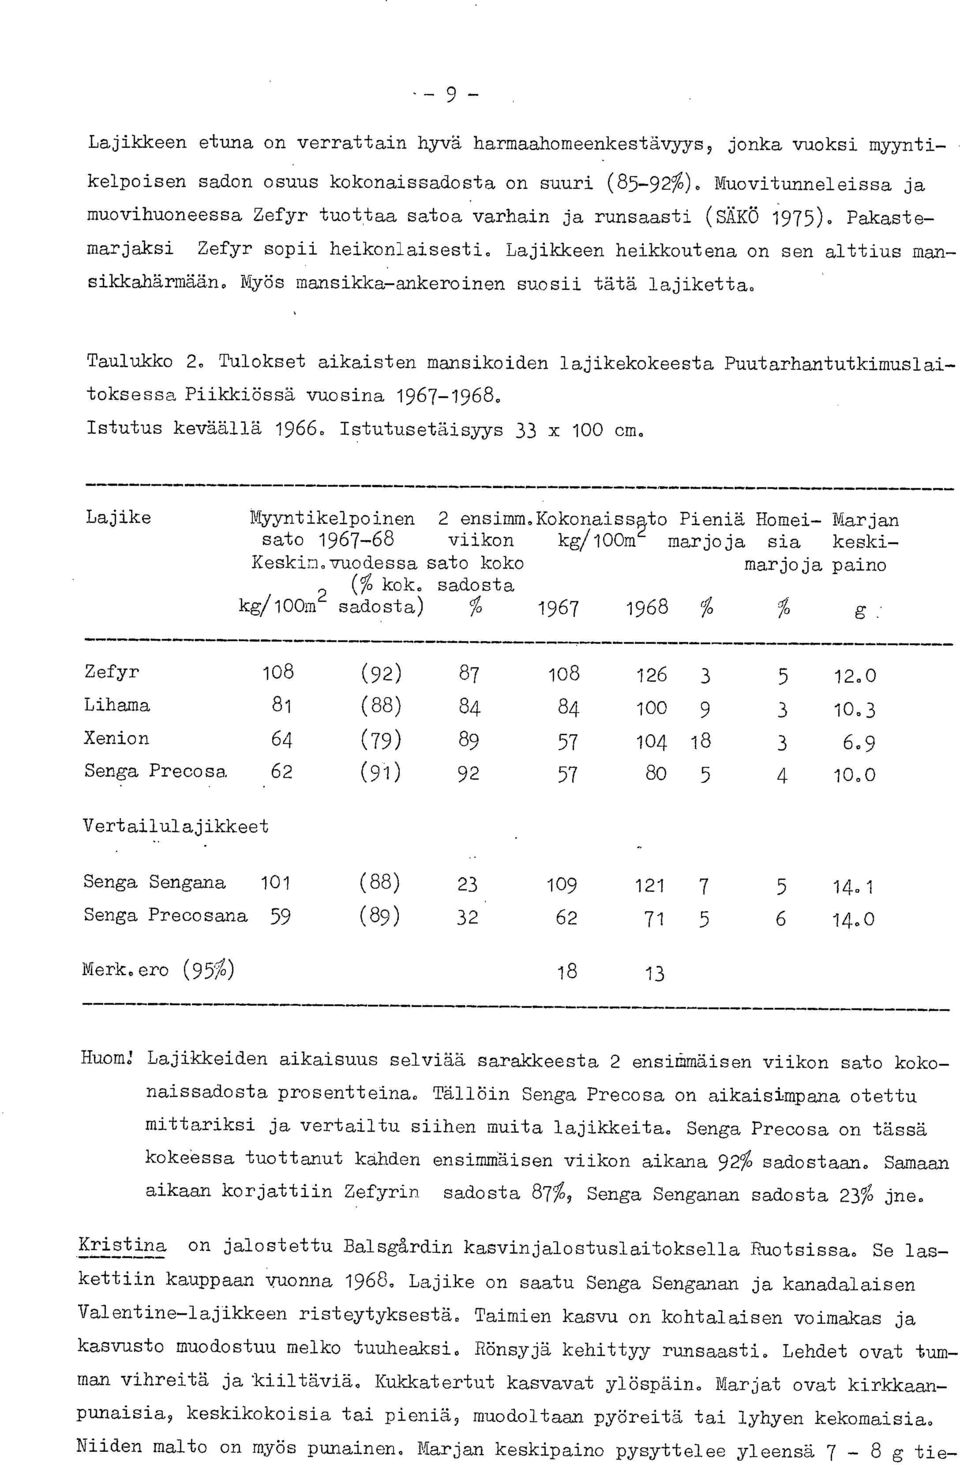 Myös mansikka-ankeroinen suosii tätä lajiketta. Taulukko 2. Tulokset aikaisten mansikoiden lajikekokeesta Puutarhantutkimuslaitoksessa Piikkiössä vuosina 1967-1968. Istutus keväällä 1966.